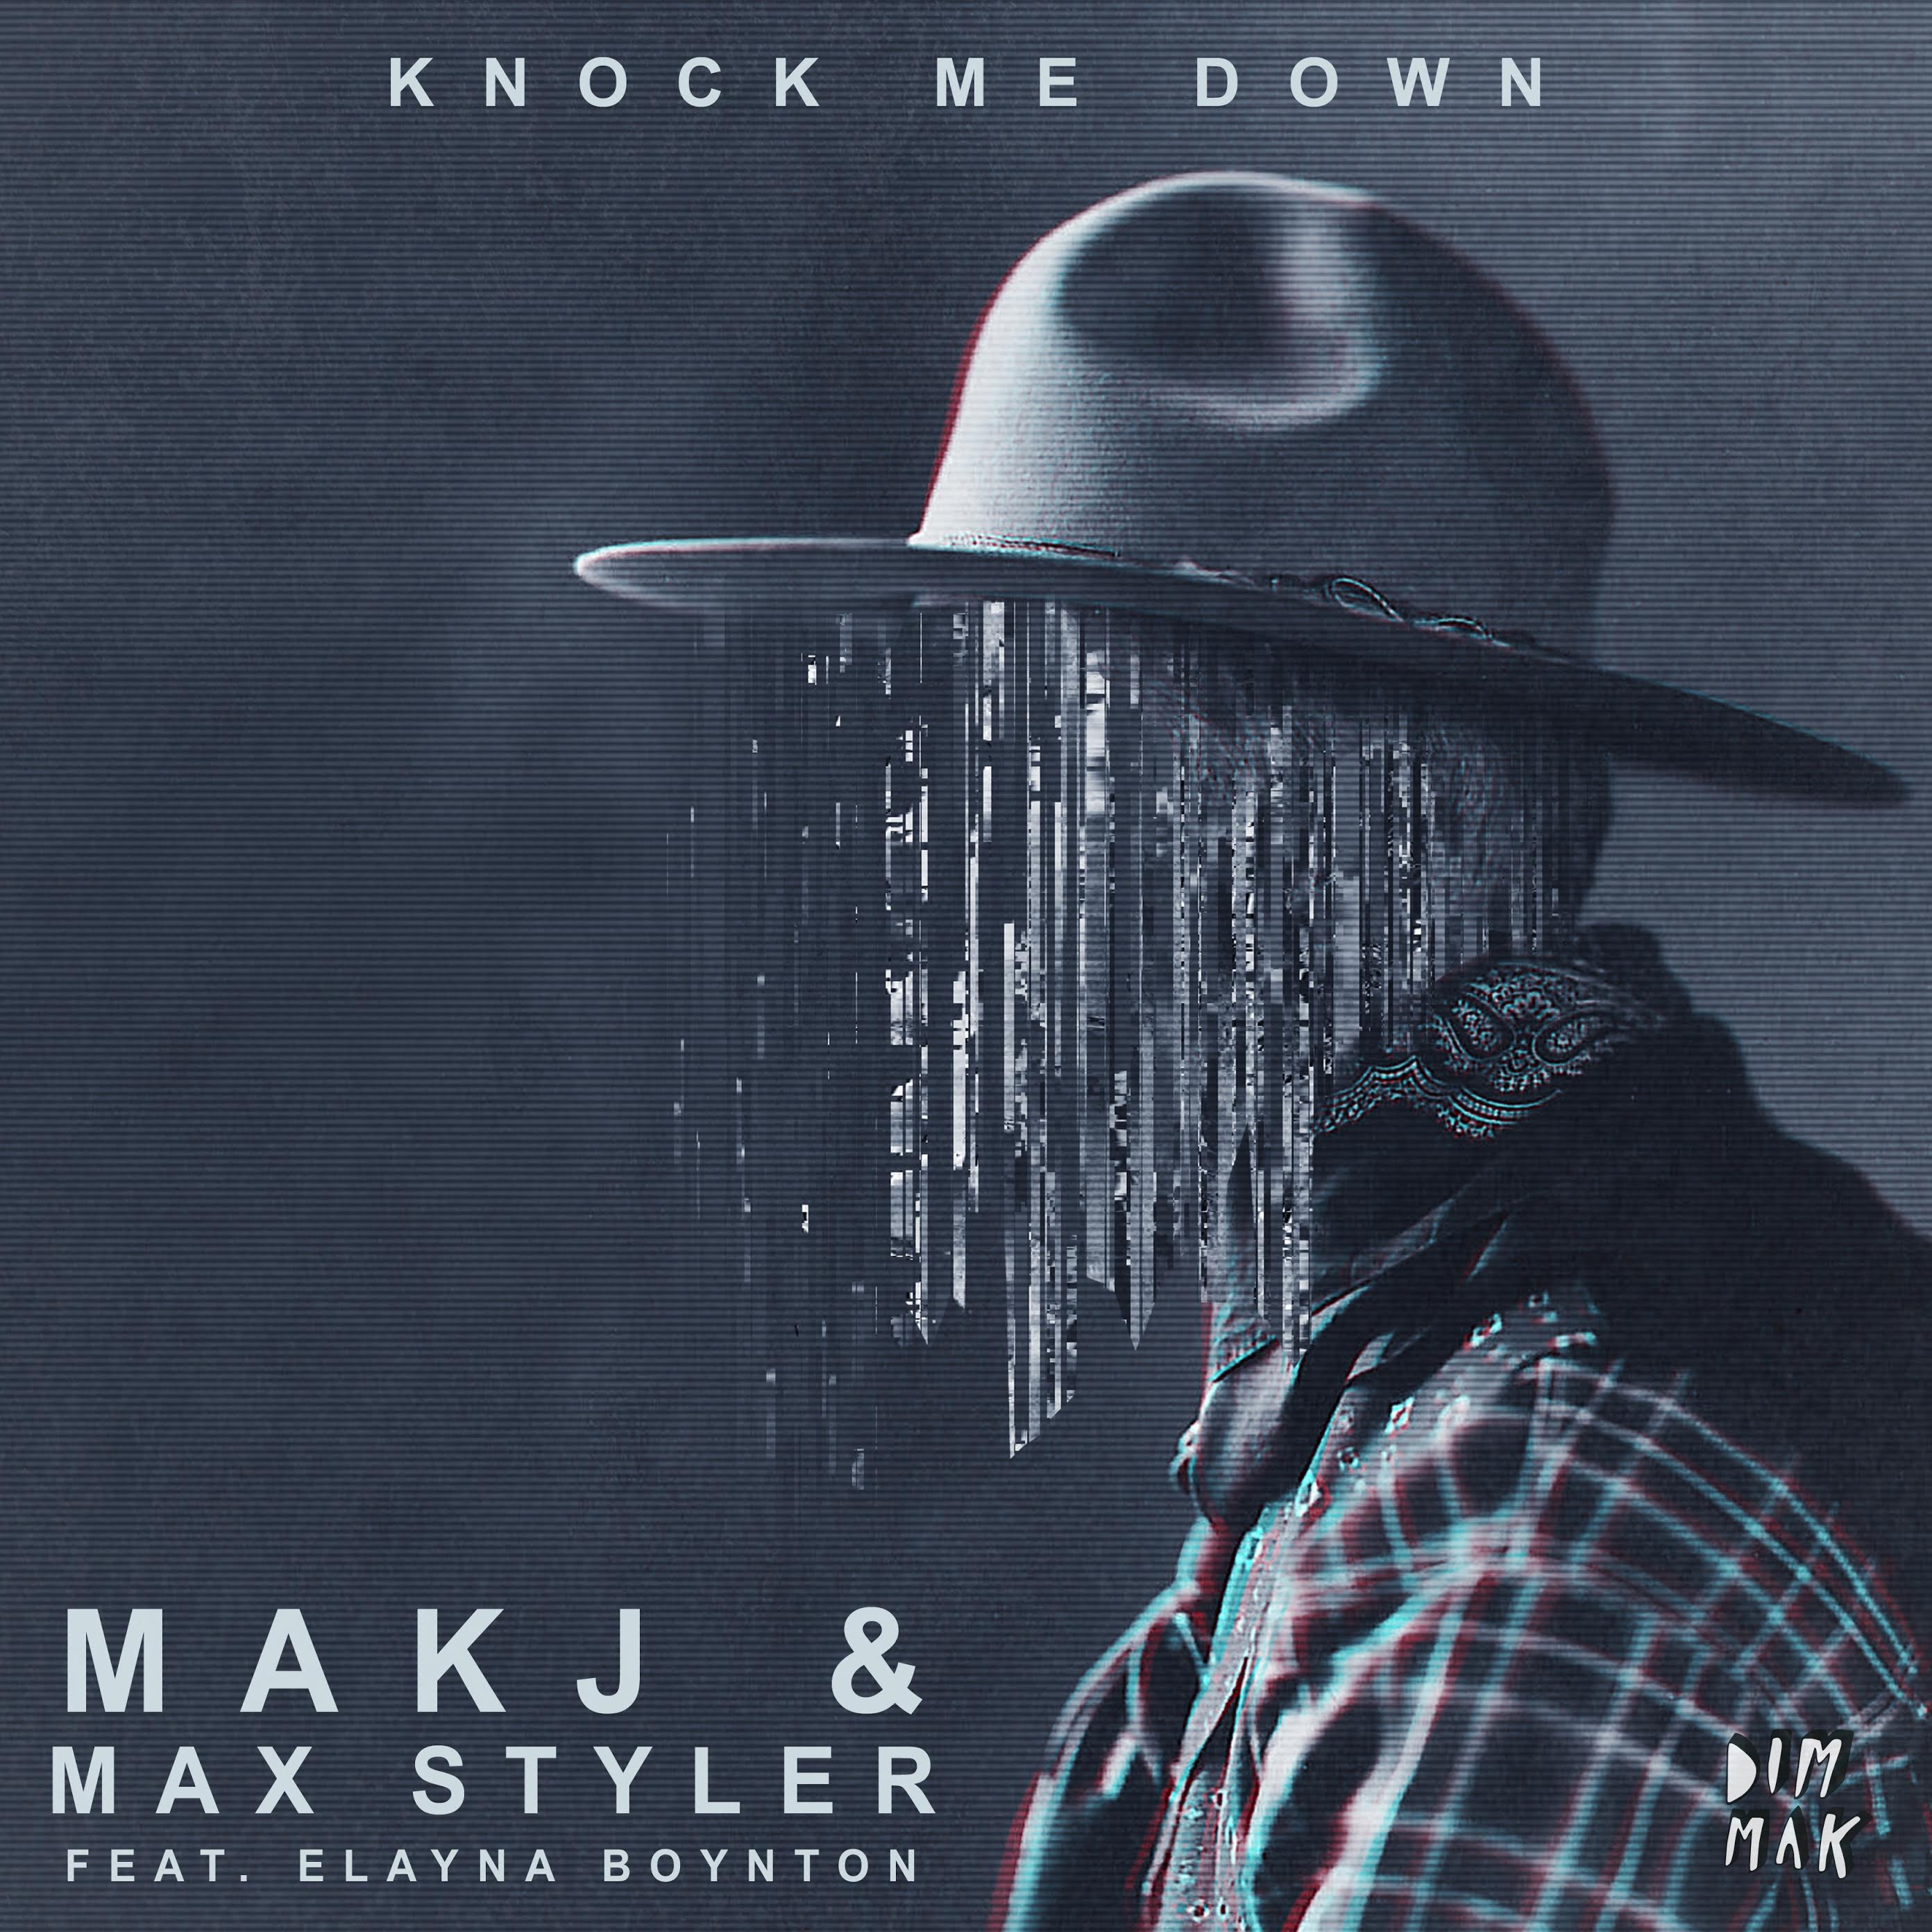 Knock me down. Elayna Boynton. MAKJ. MAKJ X Max Styler - Knock me down. Antonio Extended.